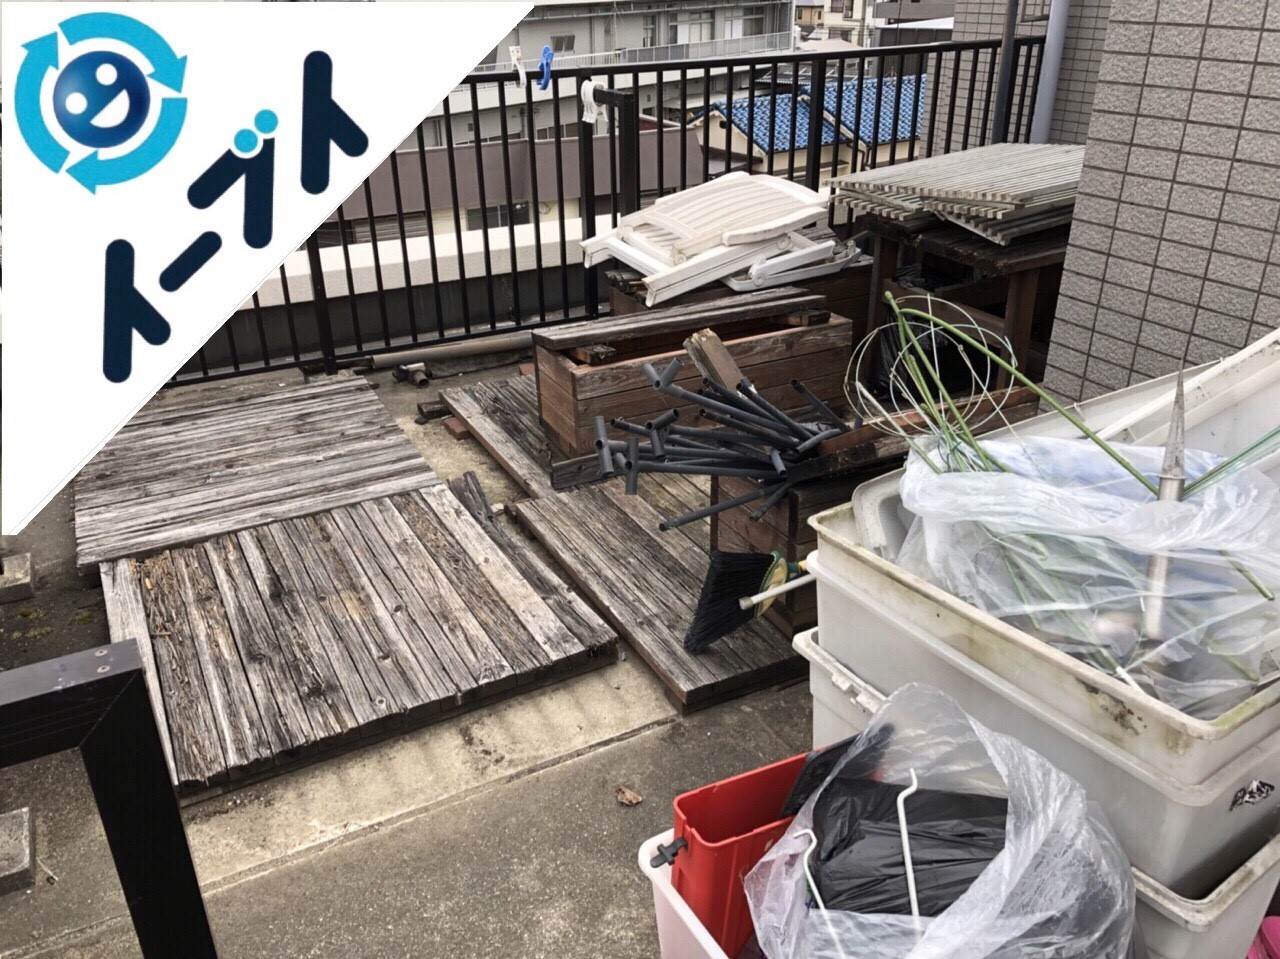 2018年6月6日【前編】大阪府吹田市でベランダのガーデニング用品の不用品回収写真2